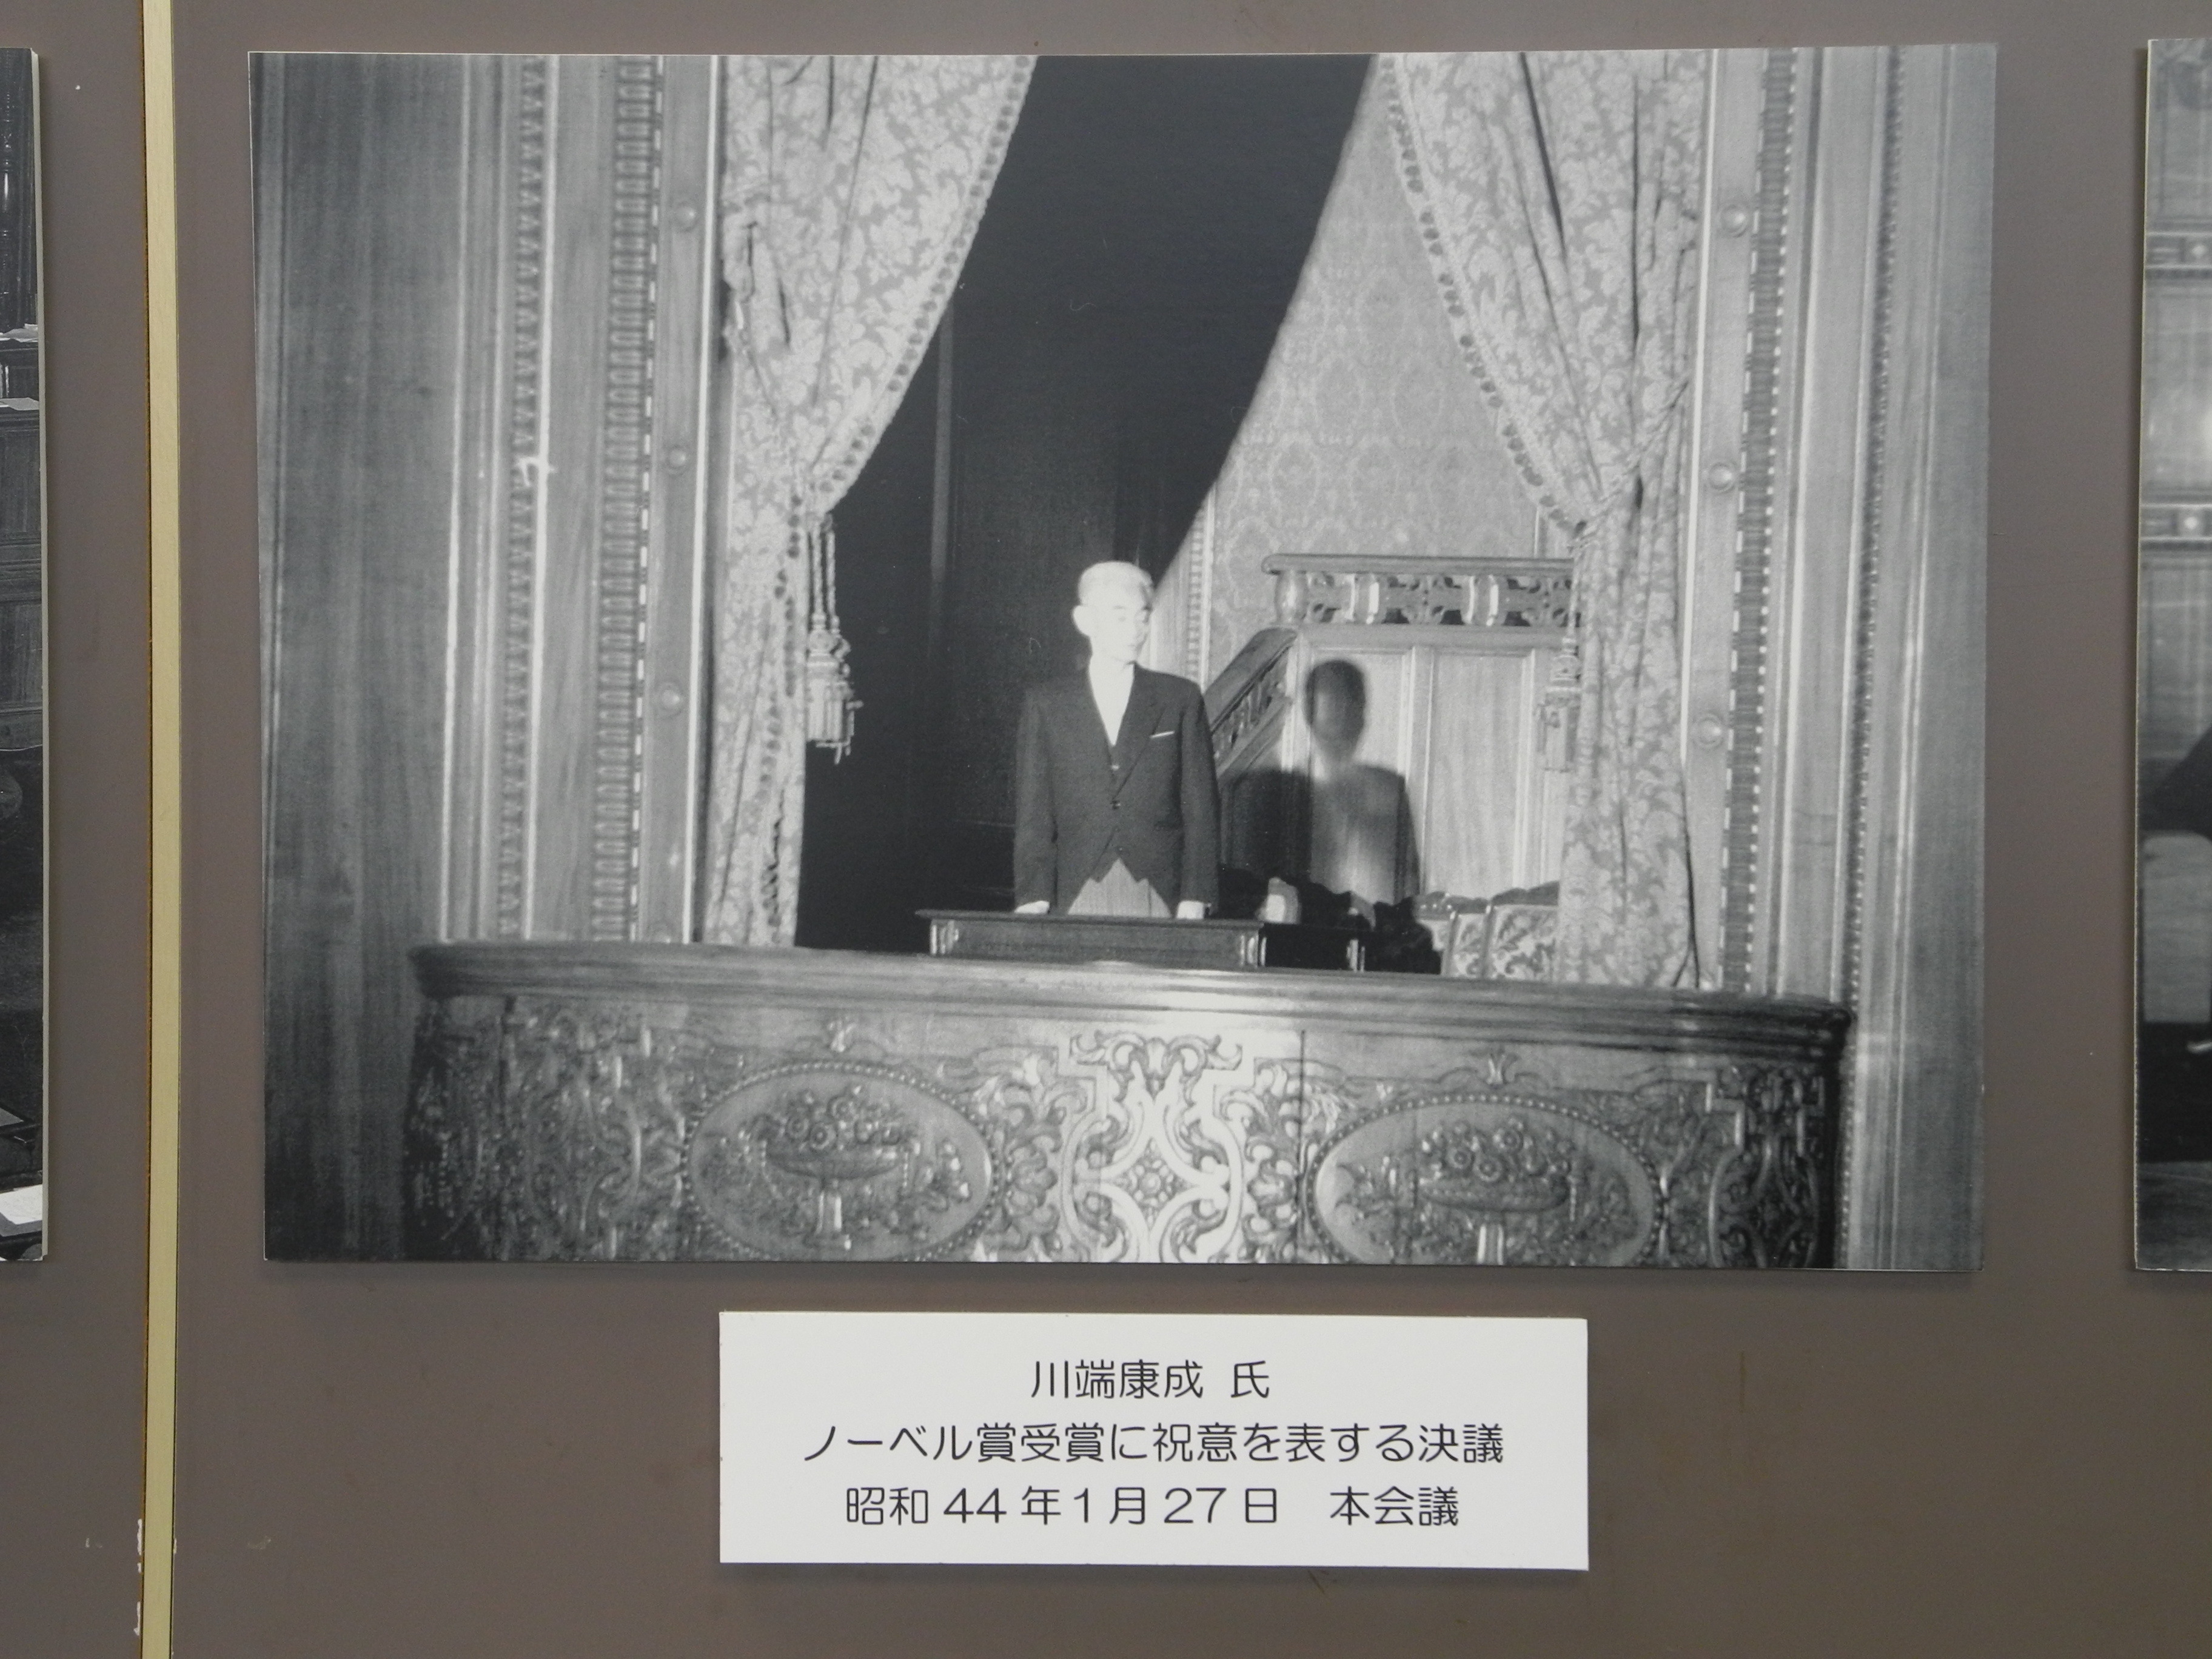 憲政記念館「所蔵フィルムで見る昭和40年代前半の国会の風景」